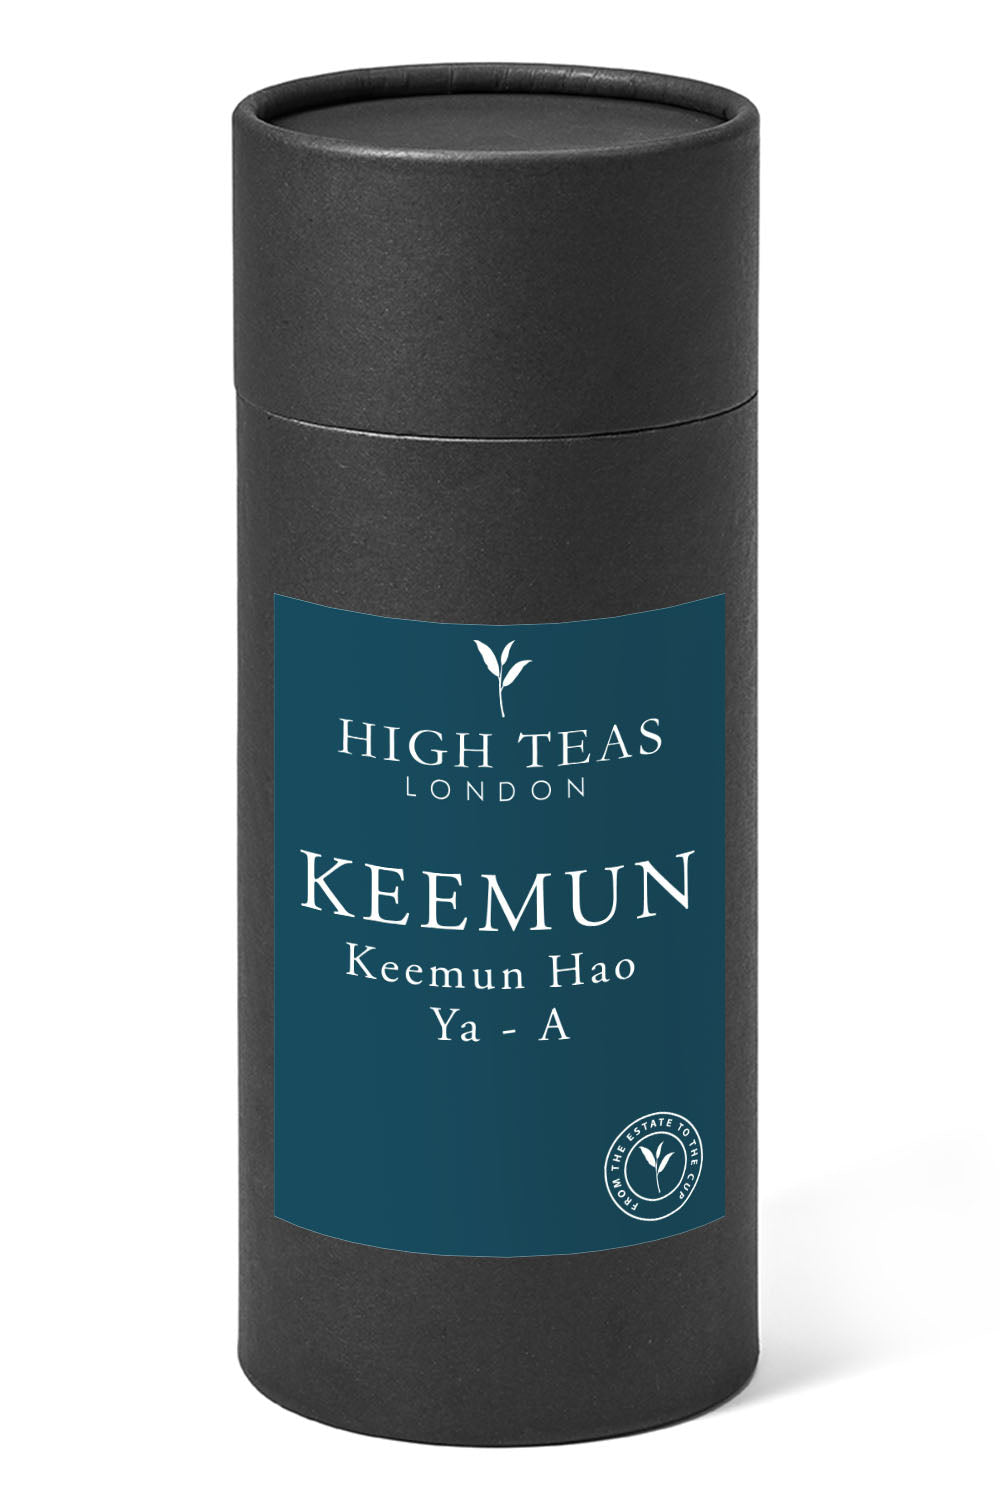 Keemun Hao Ya - A-150g gift-Loose Leaf Tea-High Teas